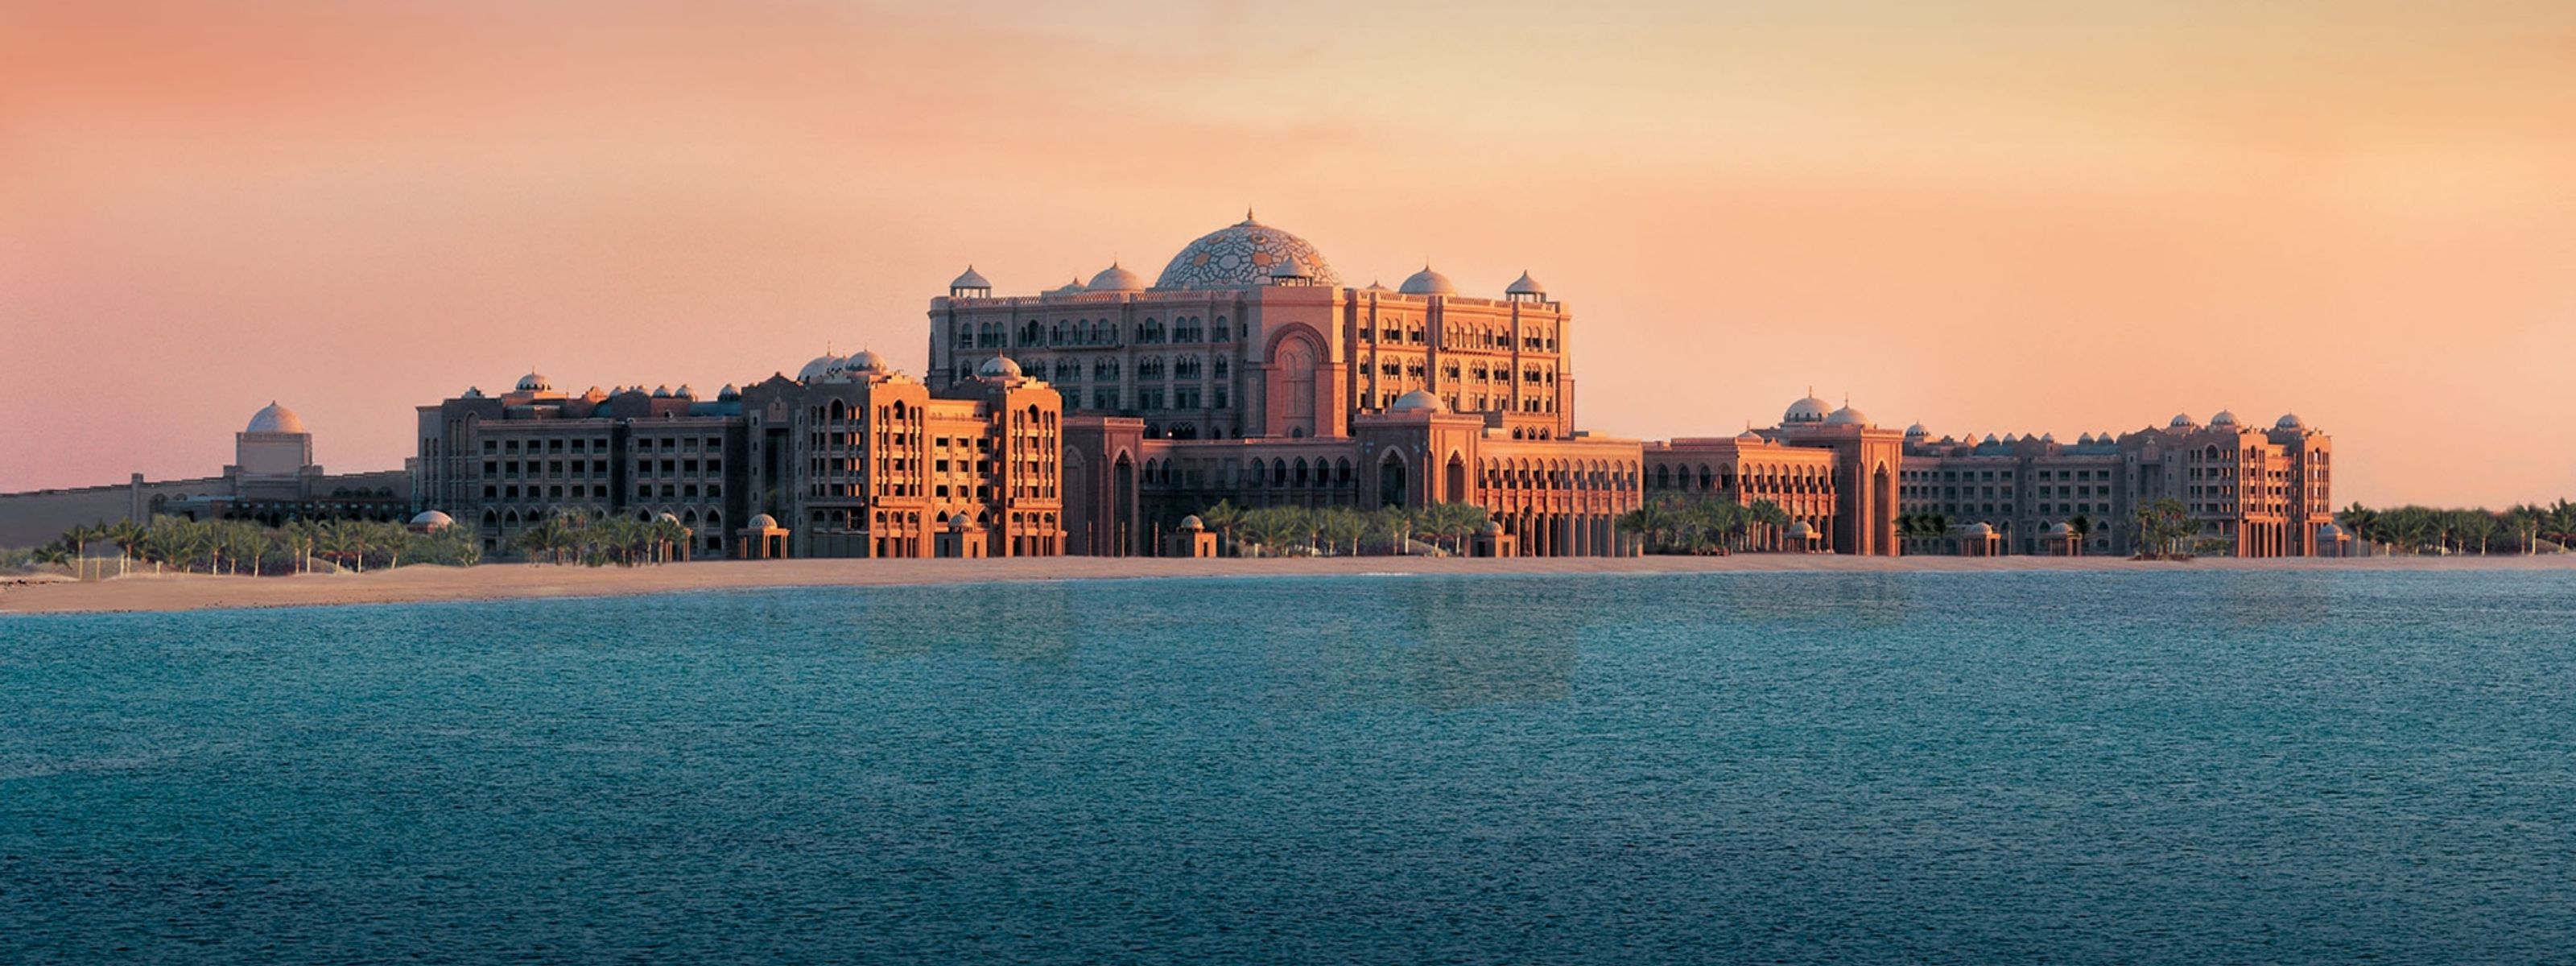 Abu Dhabi Reise: Luxusmetropole und Wüstenerlebnis